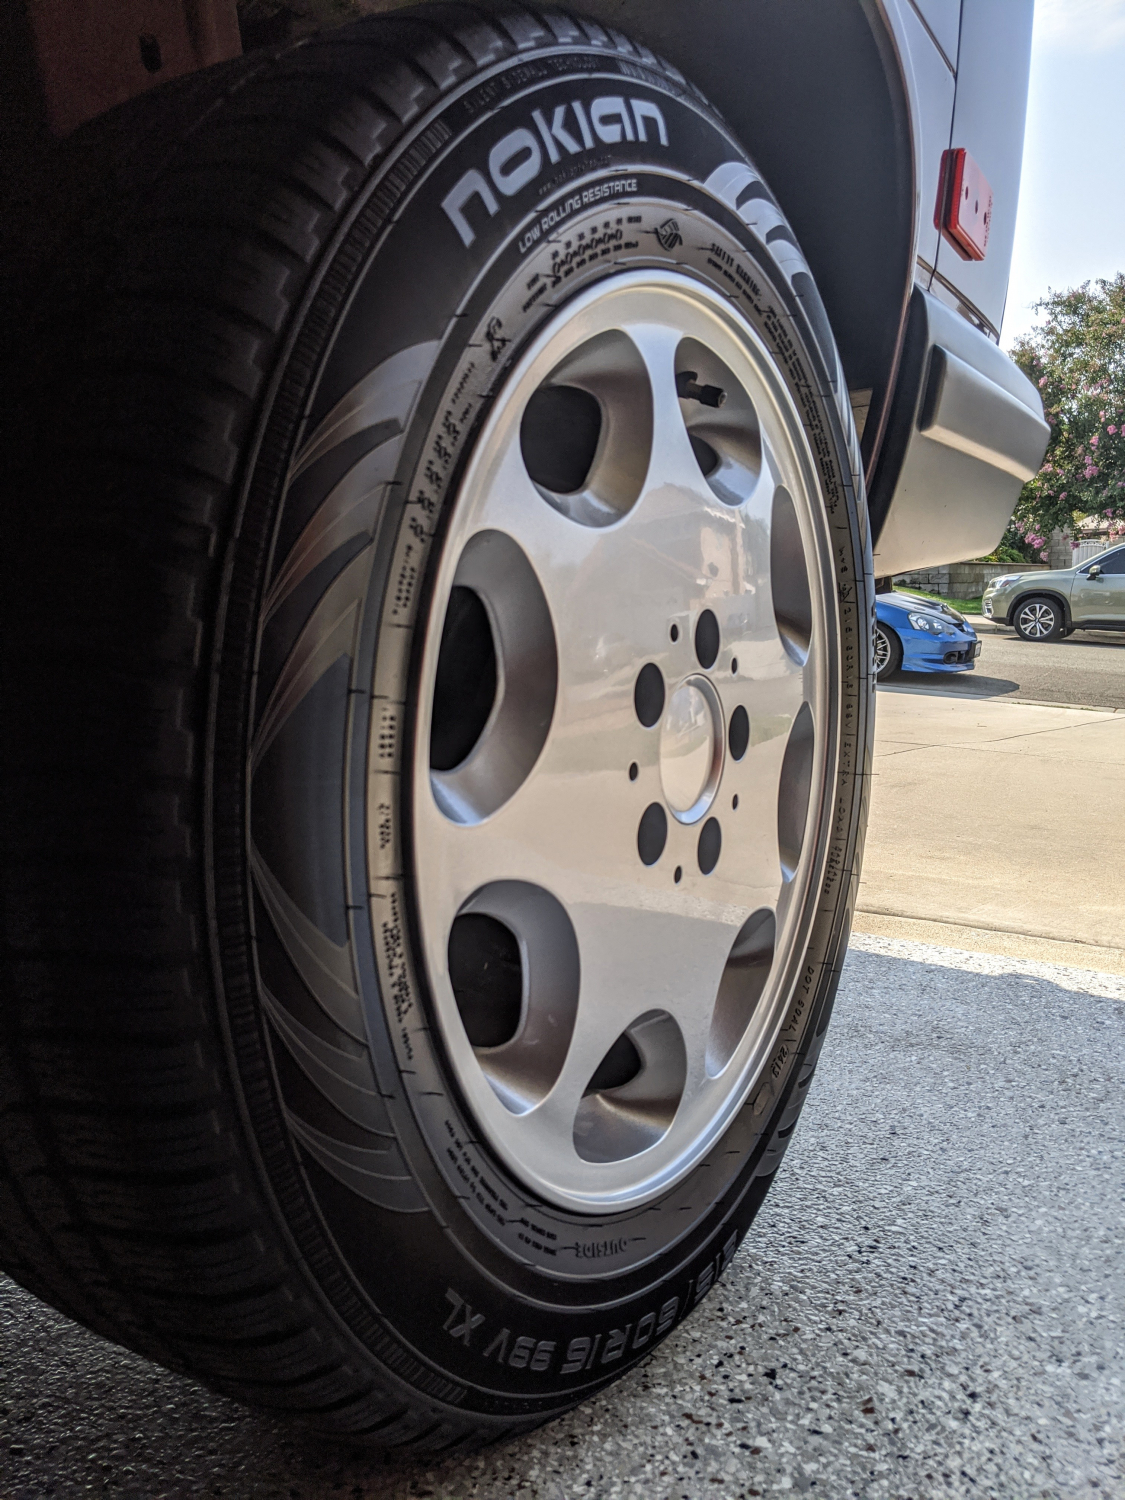 Meguiar's Non-Acid Wheel & Tire Cleaner Bundle